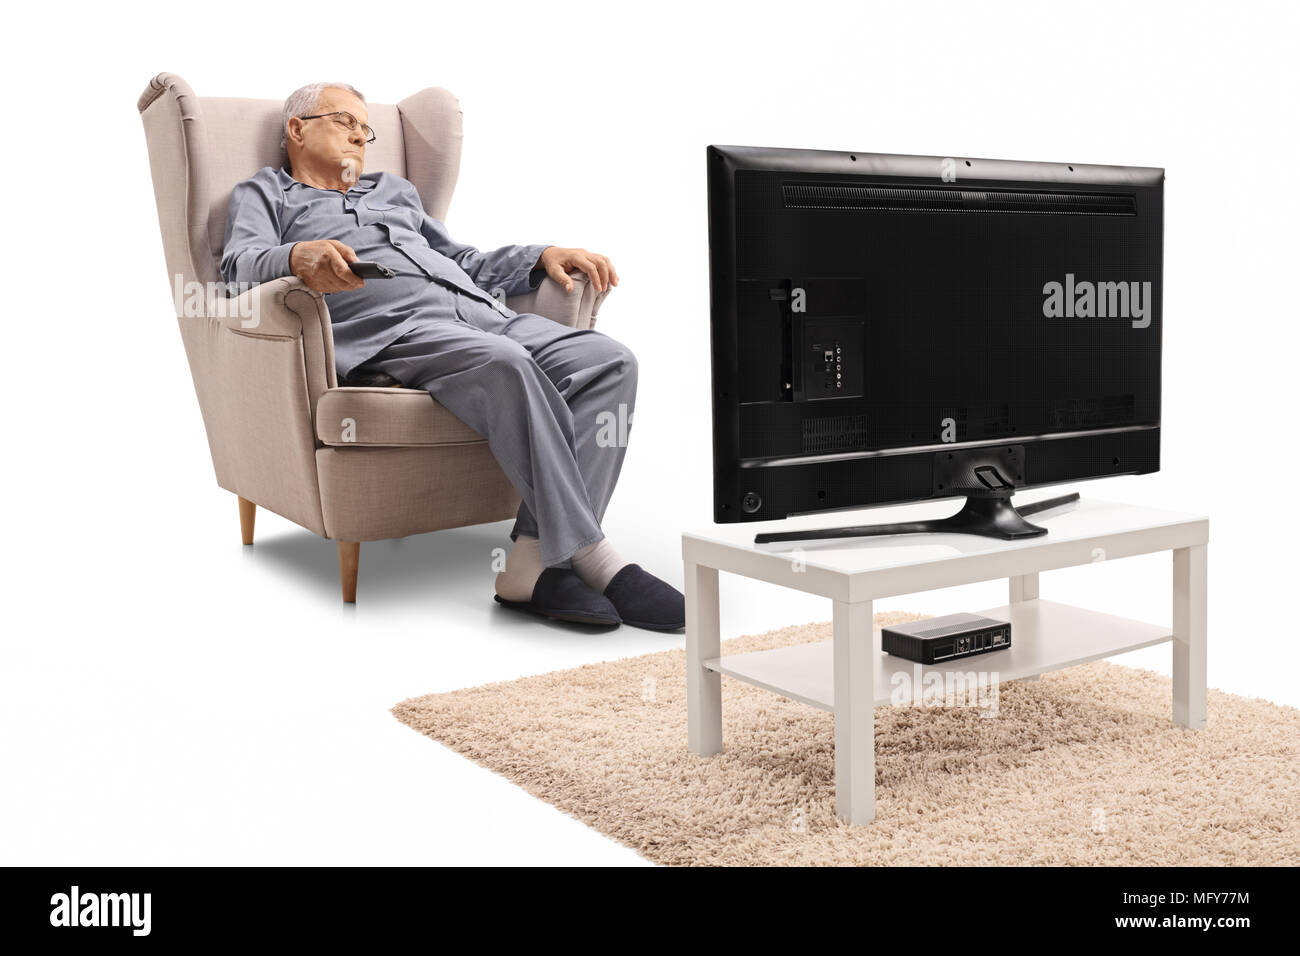 Homme mûr de dormir dans un fauteuil devant la télévision isolé sur fond blanc Banque D'Images